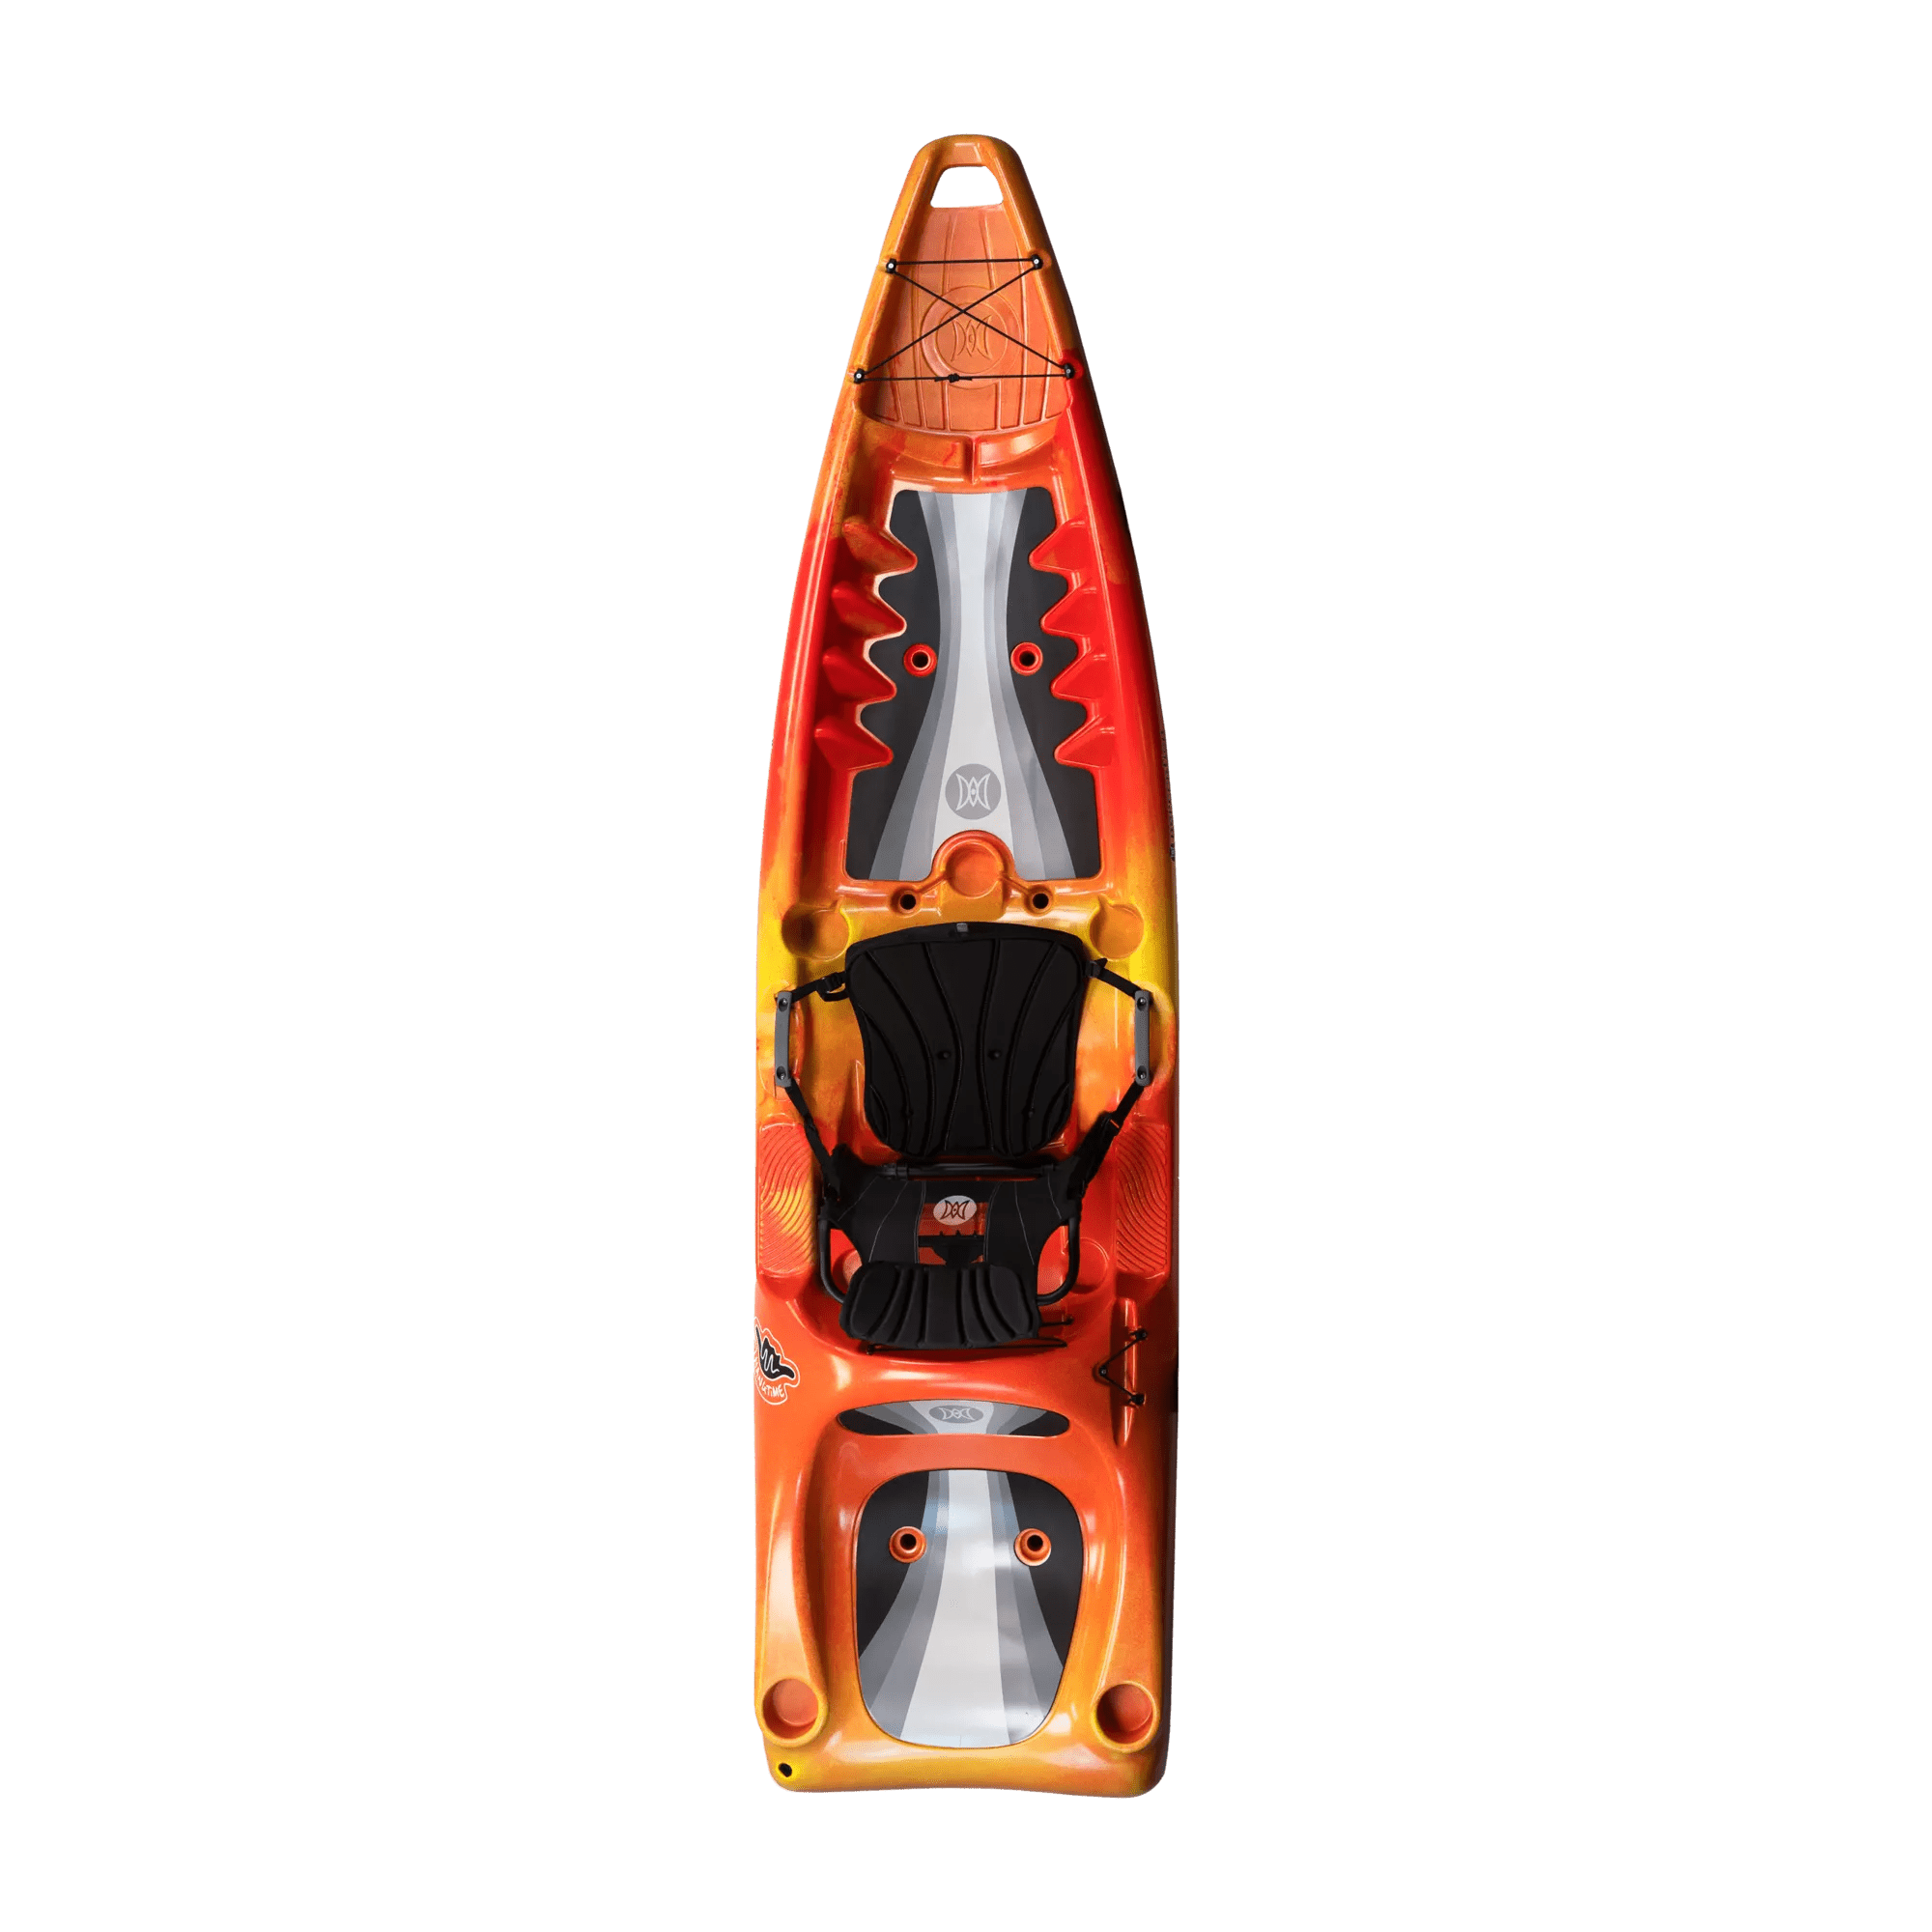 PERCEPTION - Hangtime 11.0 Recreational Kayak -  - 9351933042 - TOP